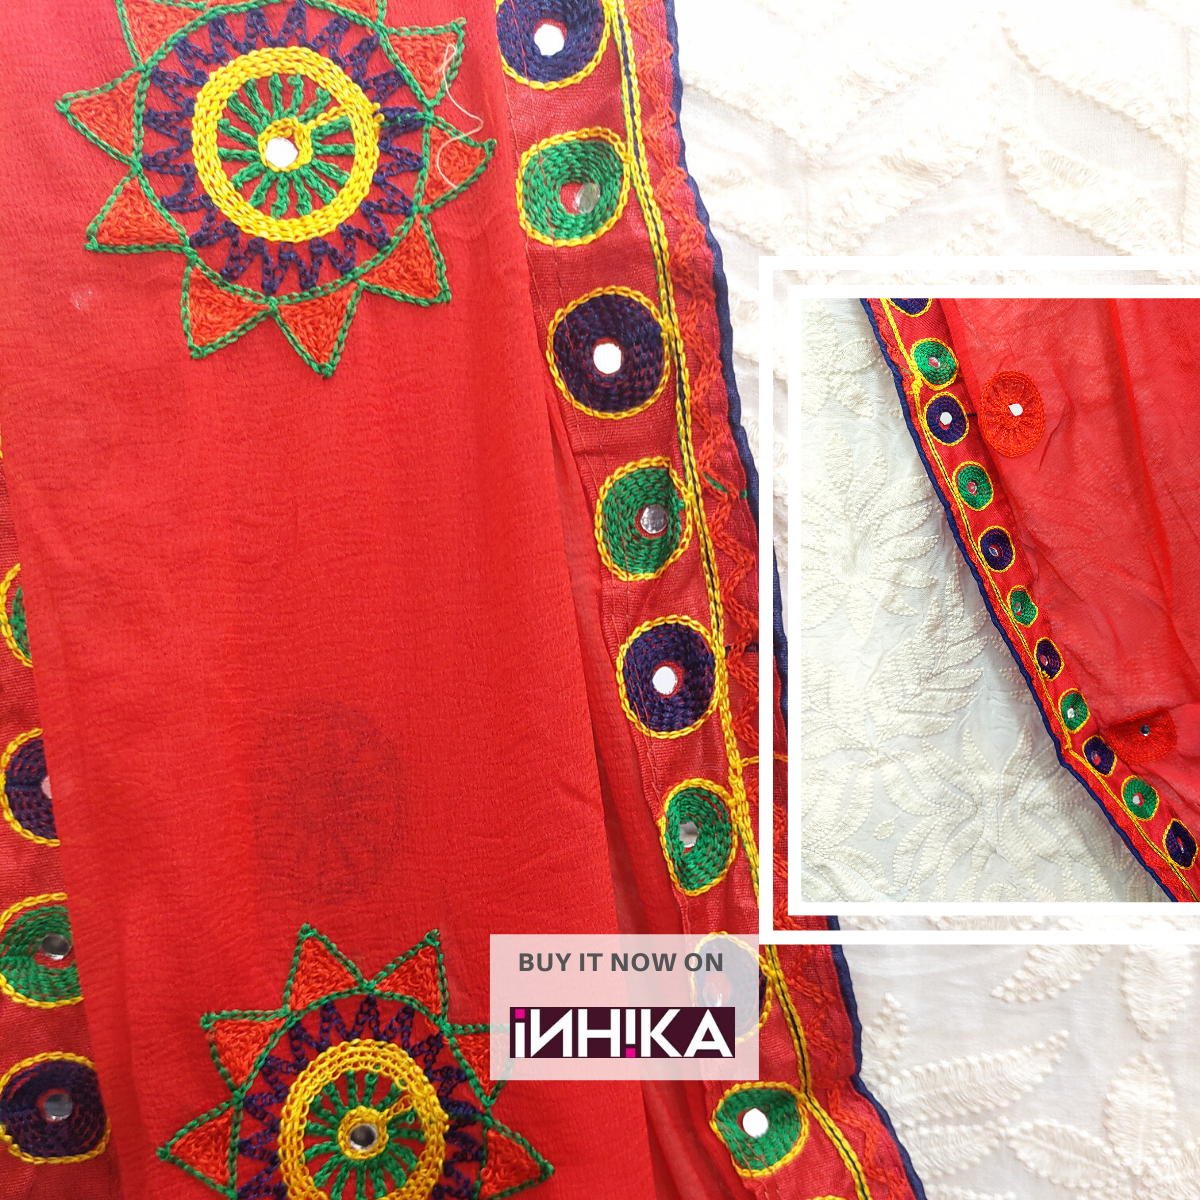 Jt Title 7 Ikkat Special Cotton Dress Material Collection | Cotton dress  material, Dress materials, Printed cotton dress